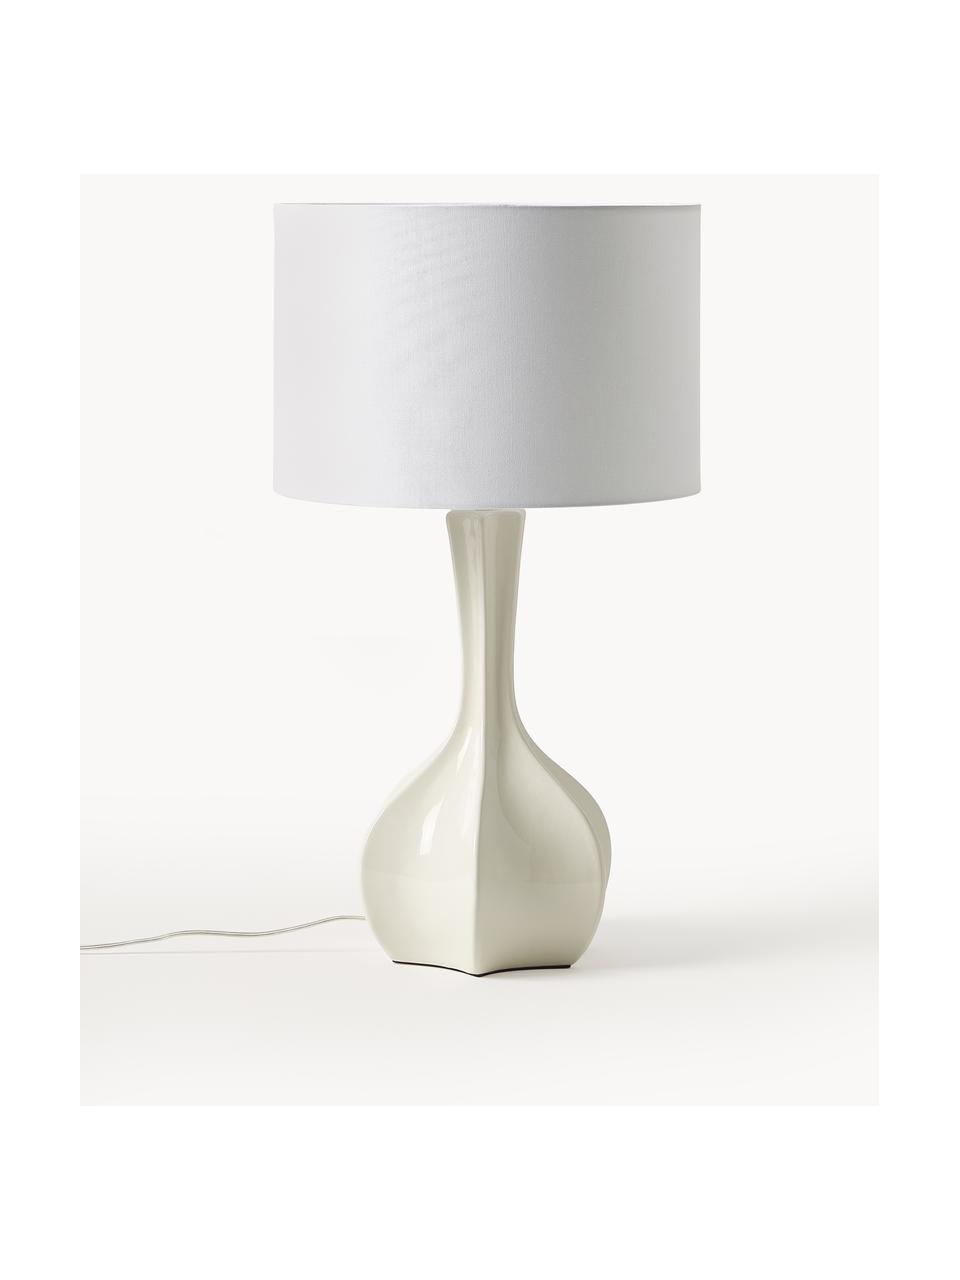 Grote tafellamp Kash met keramische voet, Lampenkap: linnen, Lampvoet: keramiek, Wit, gebroken wit, Ø 38 x H 68 cm